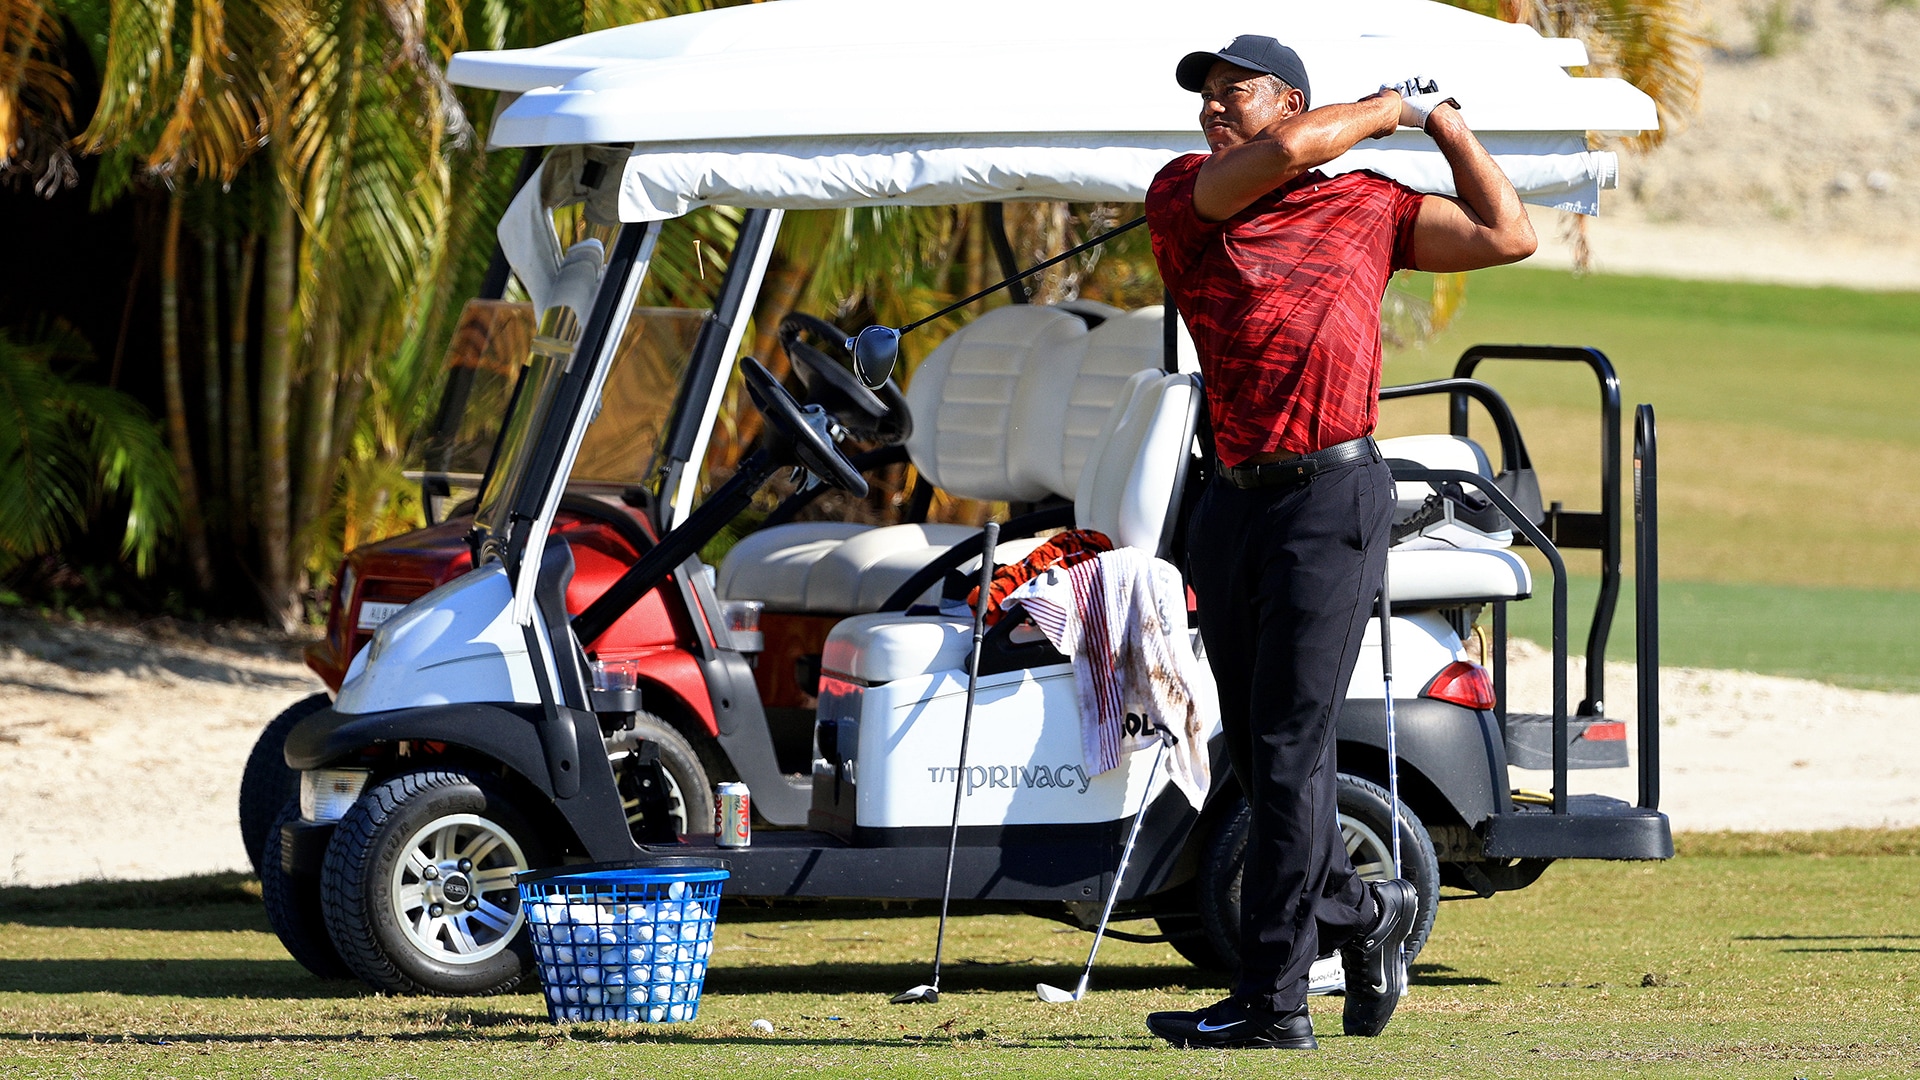 Timeline: A look back at Tiger Woods' return to golf after car crash 4